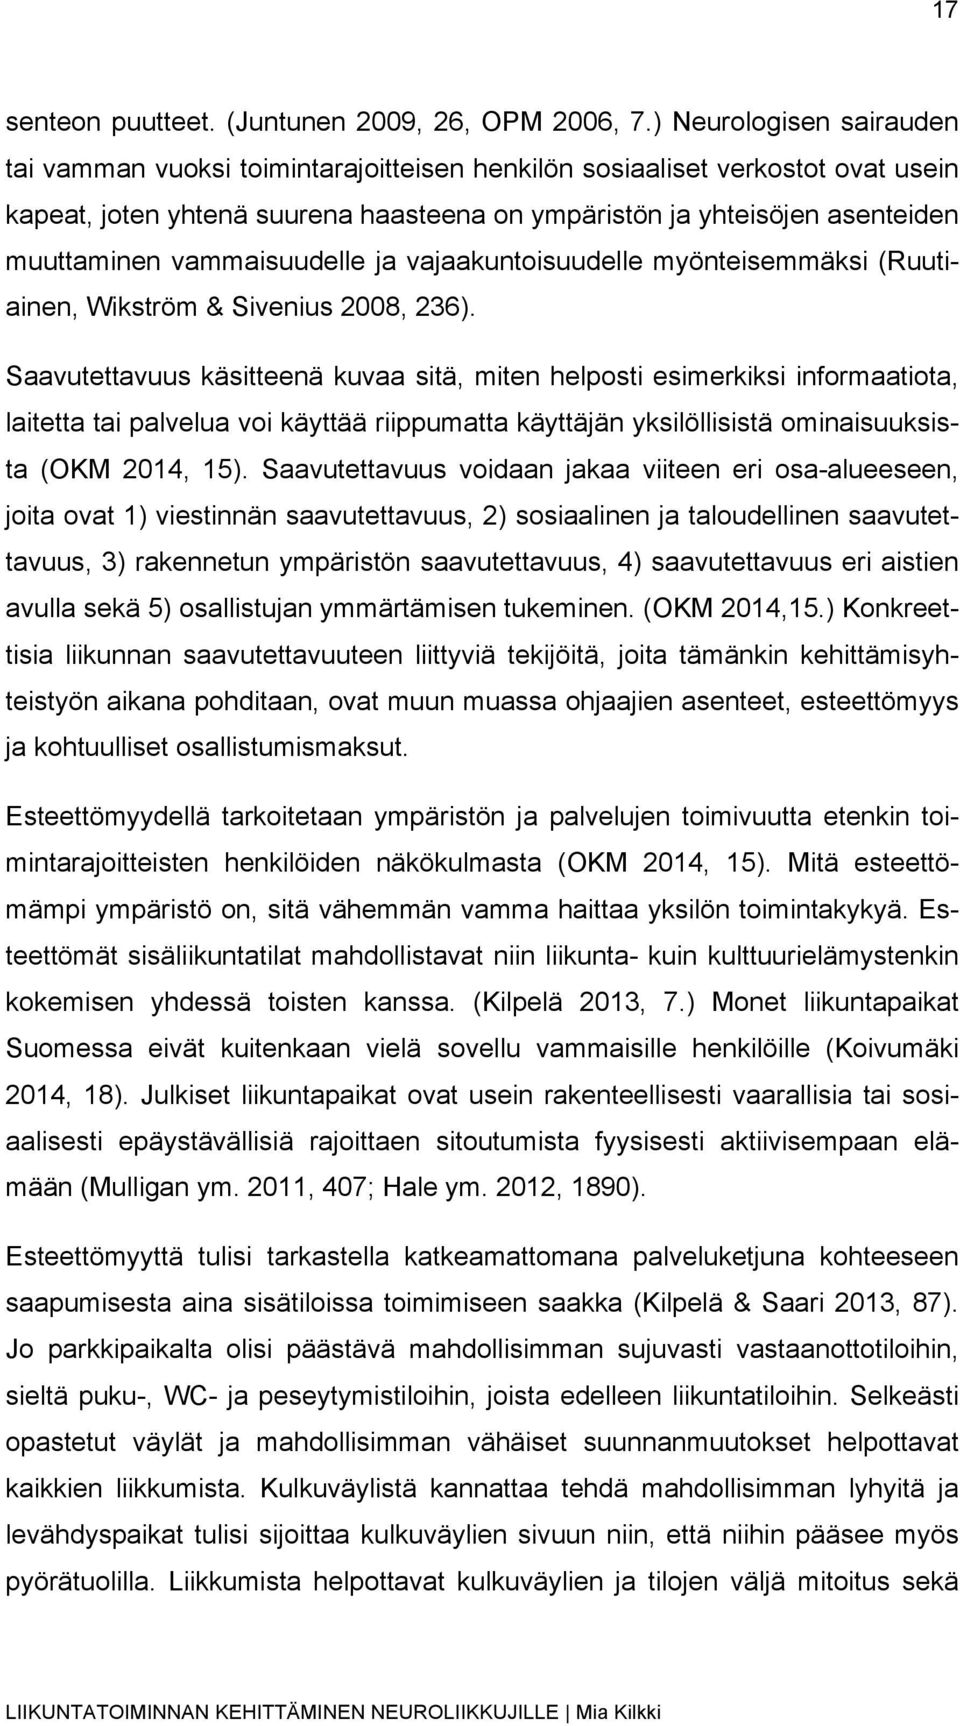 vammaisuudelle ja vajaakuntoisuudelle myönteisemmäksi (Ruutiainen, Wikström & Sivenius 2008, 236).